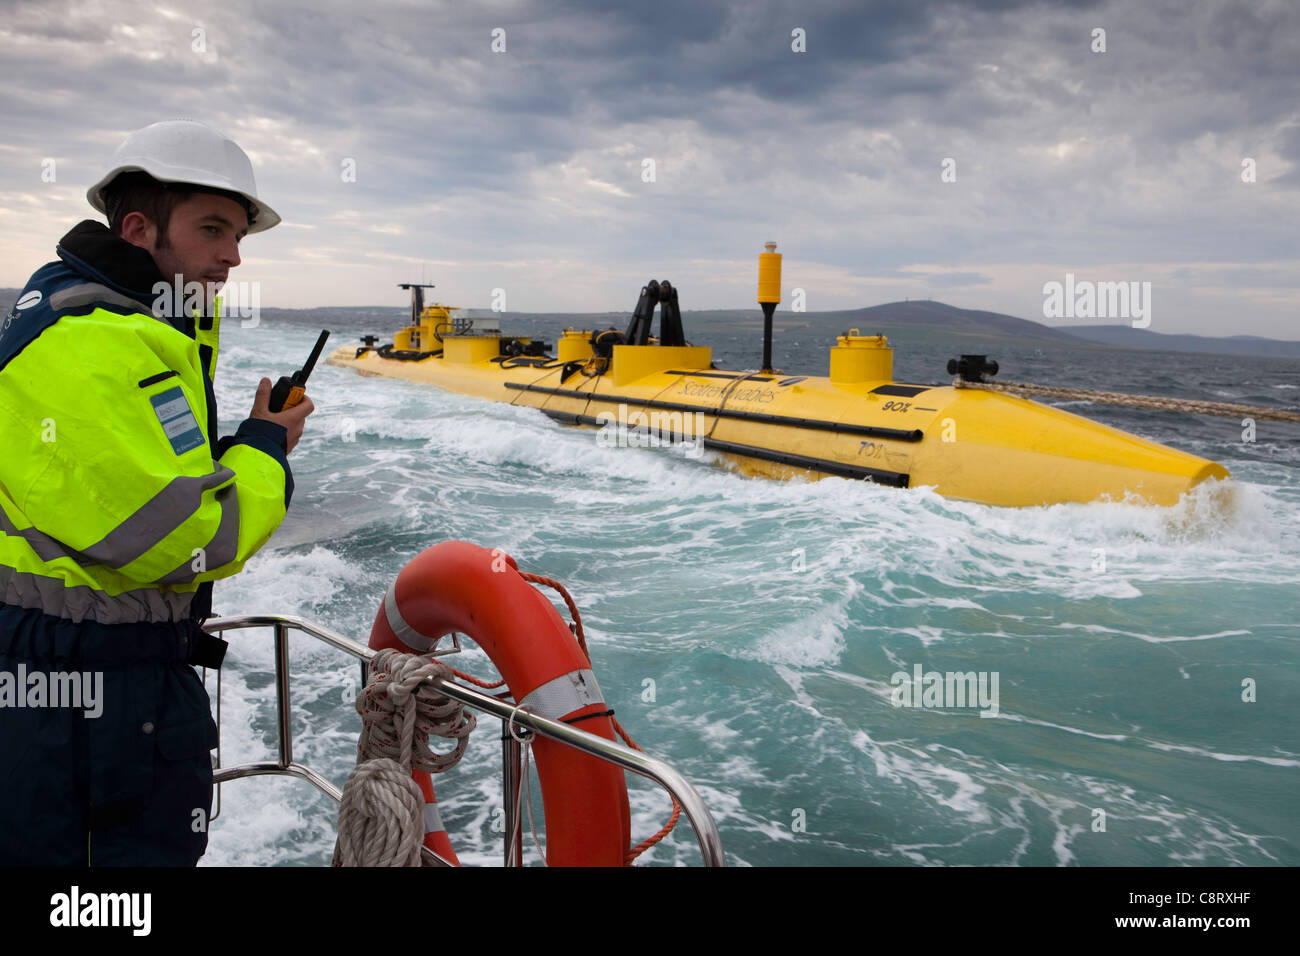 Il Scotrenewables Turbina di marea è un innovativo flottante flusso di marea turbina attualmente in fase di collaudo in Isole Orcadi Scozia Scotland Foto Stock